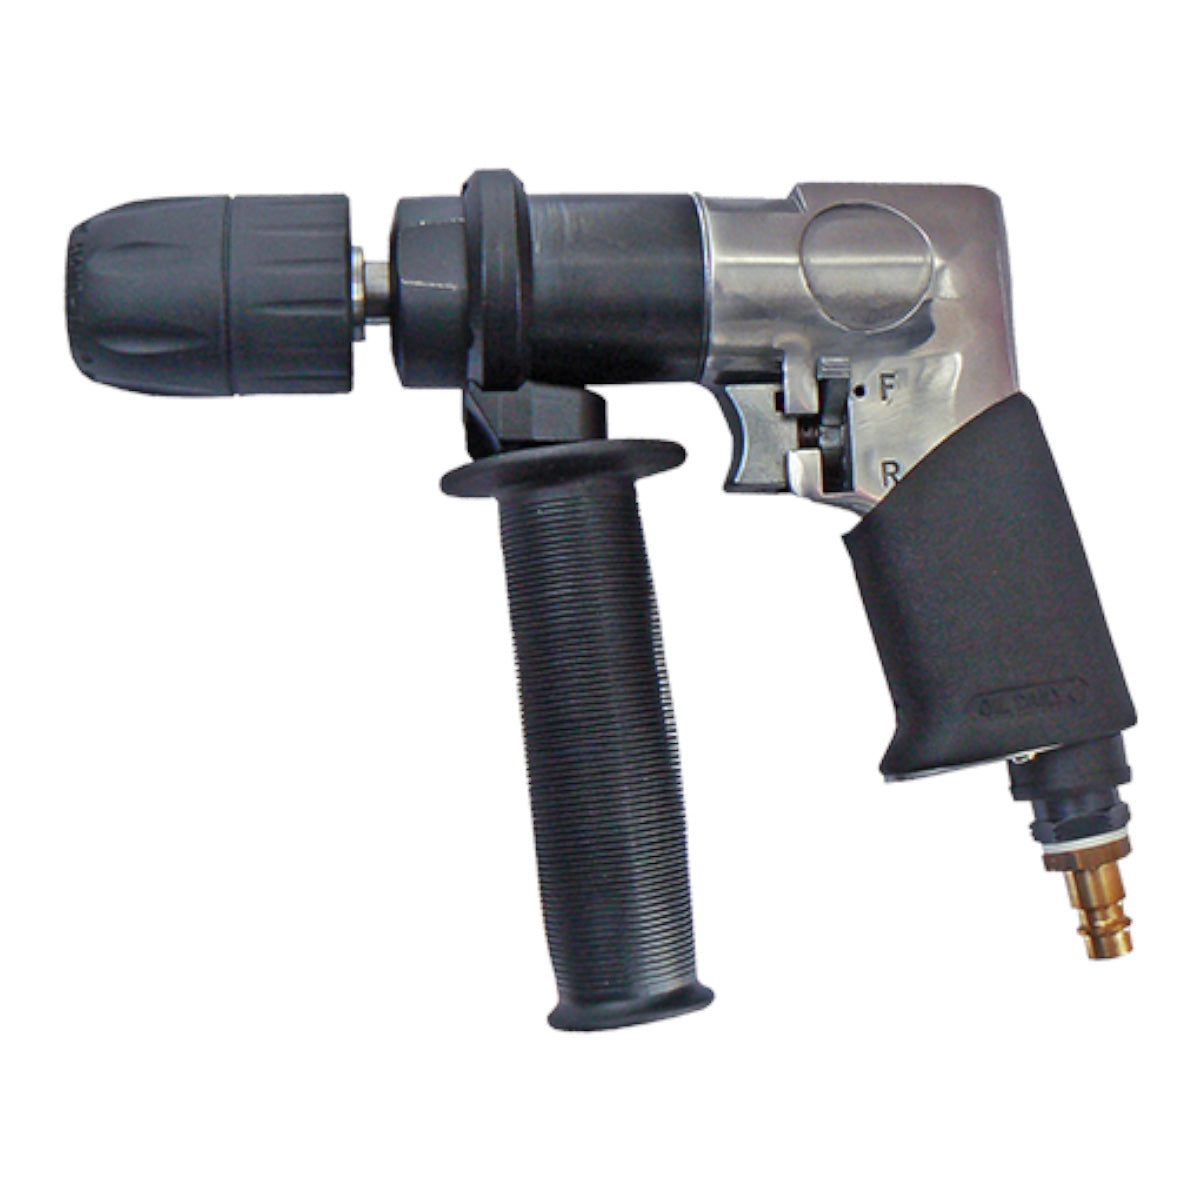 Drill GTC-041B rpm: F 450 / R 400 